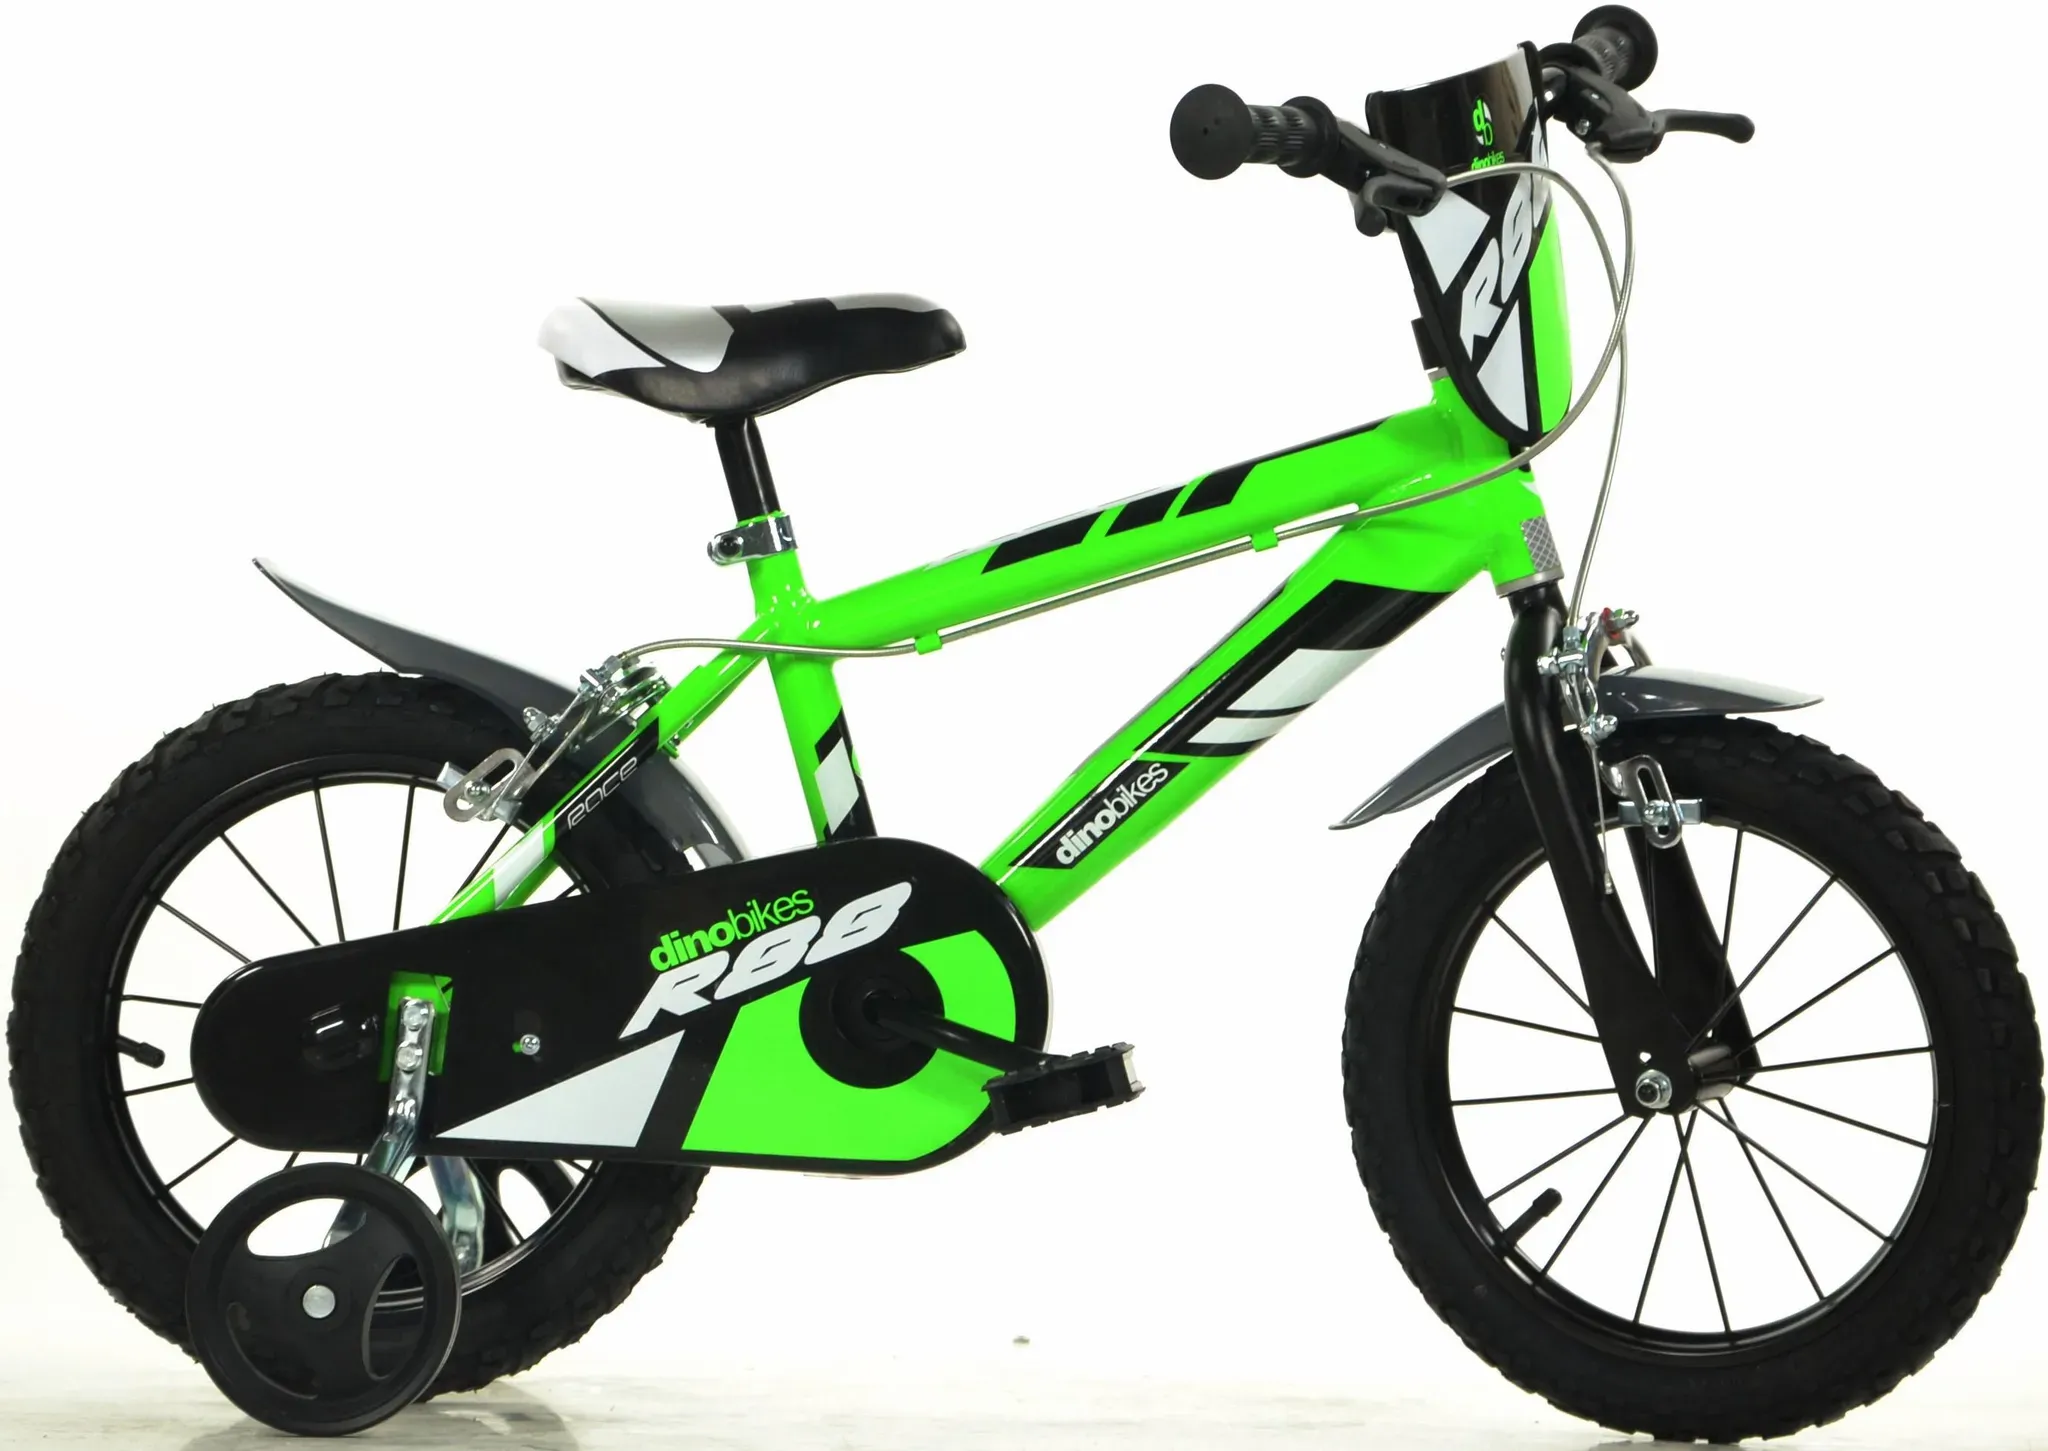 Kinderfahrrad DINO "Jungenfahrrad" Fahrräder Gr. 25 cm, 14 Zoll (35,56 cm), grün Kinder Fahrräder mit Stützrädern und Frontschild